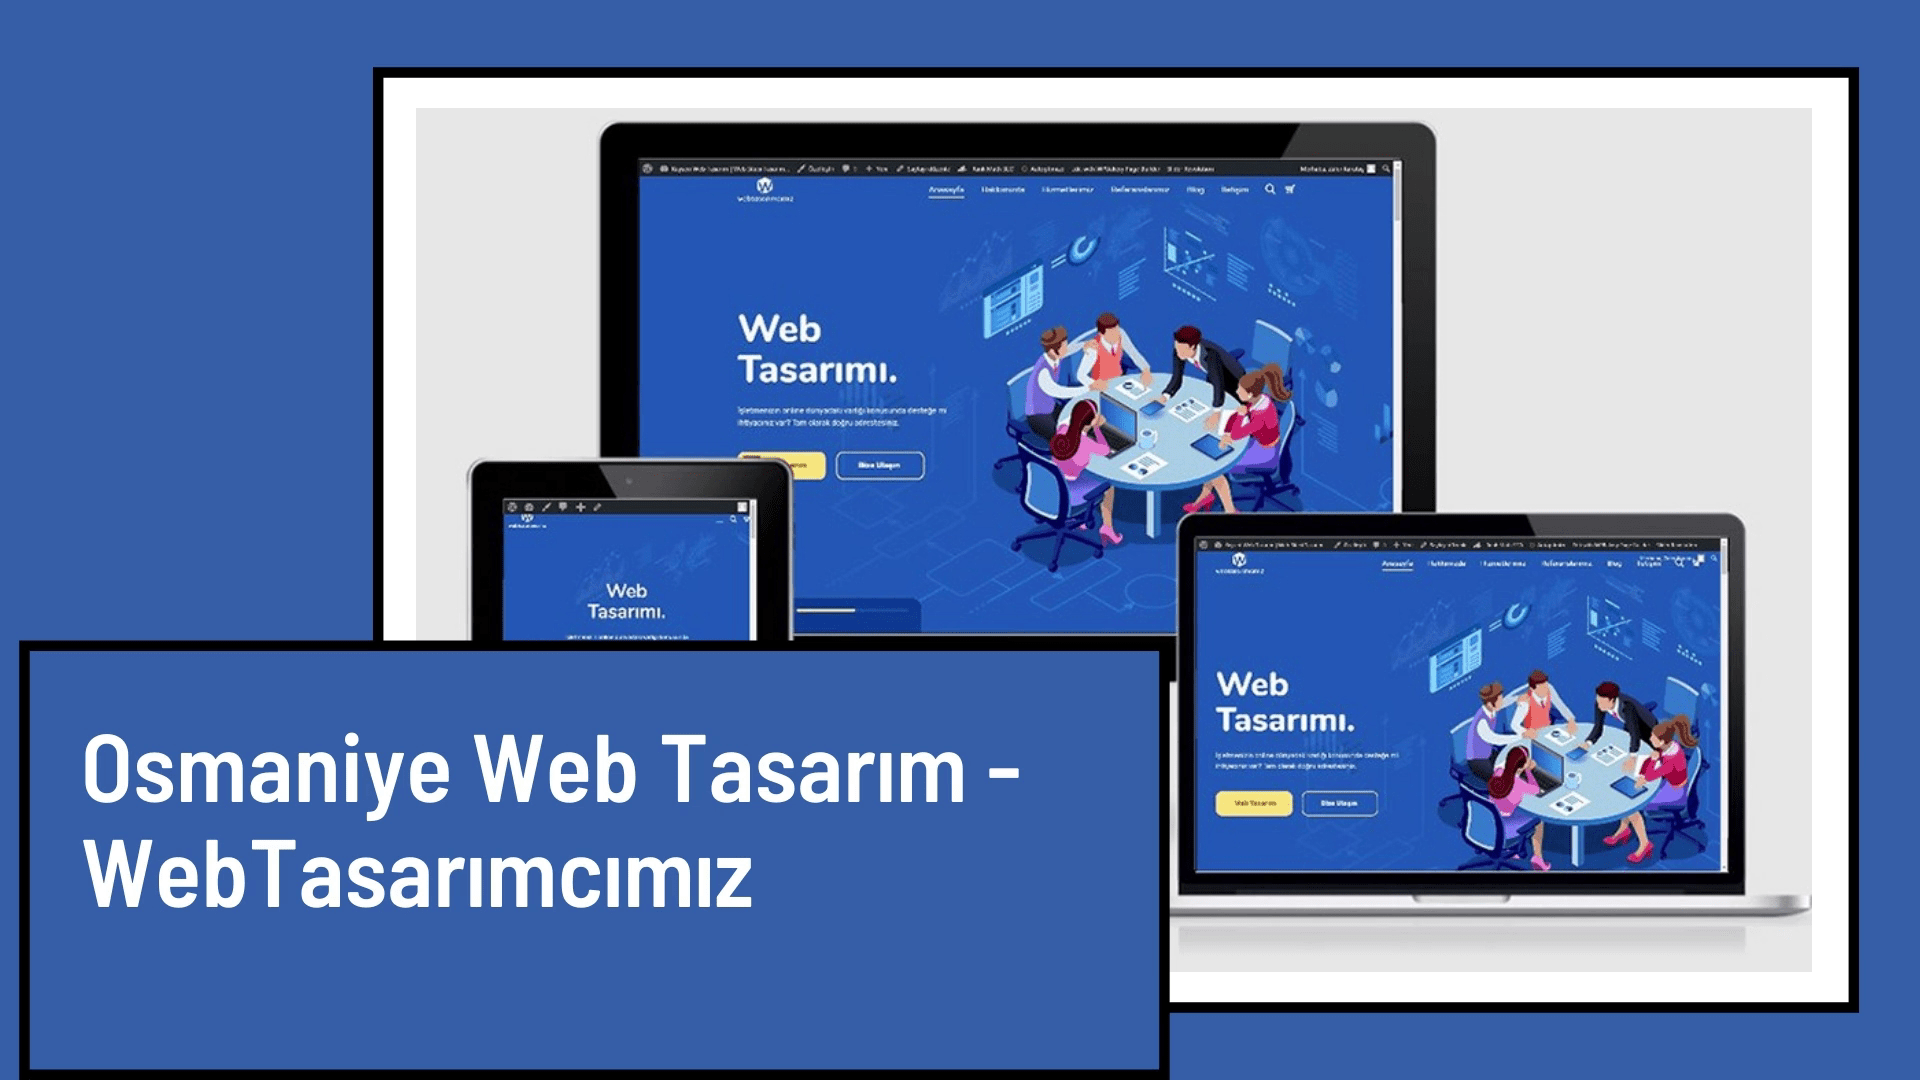 Osmaniye Web Tasarım - WebTasarımcımız